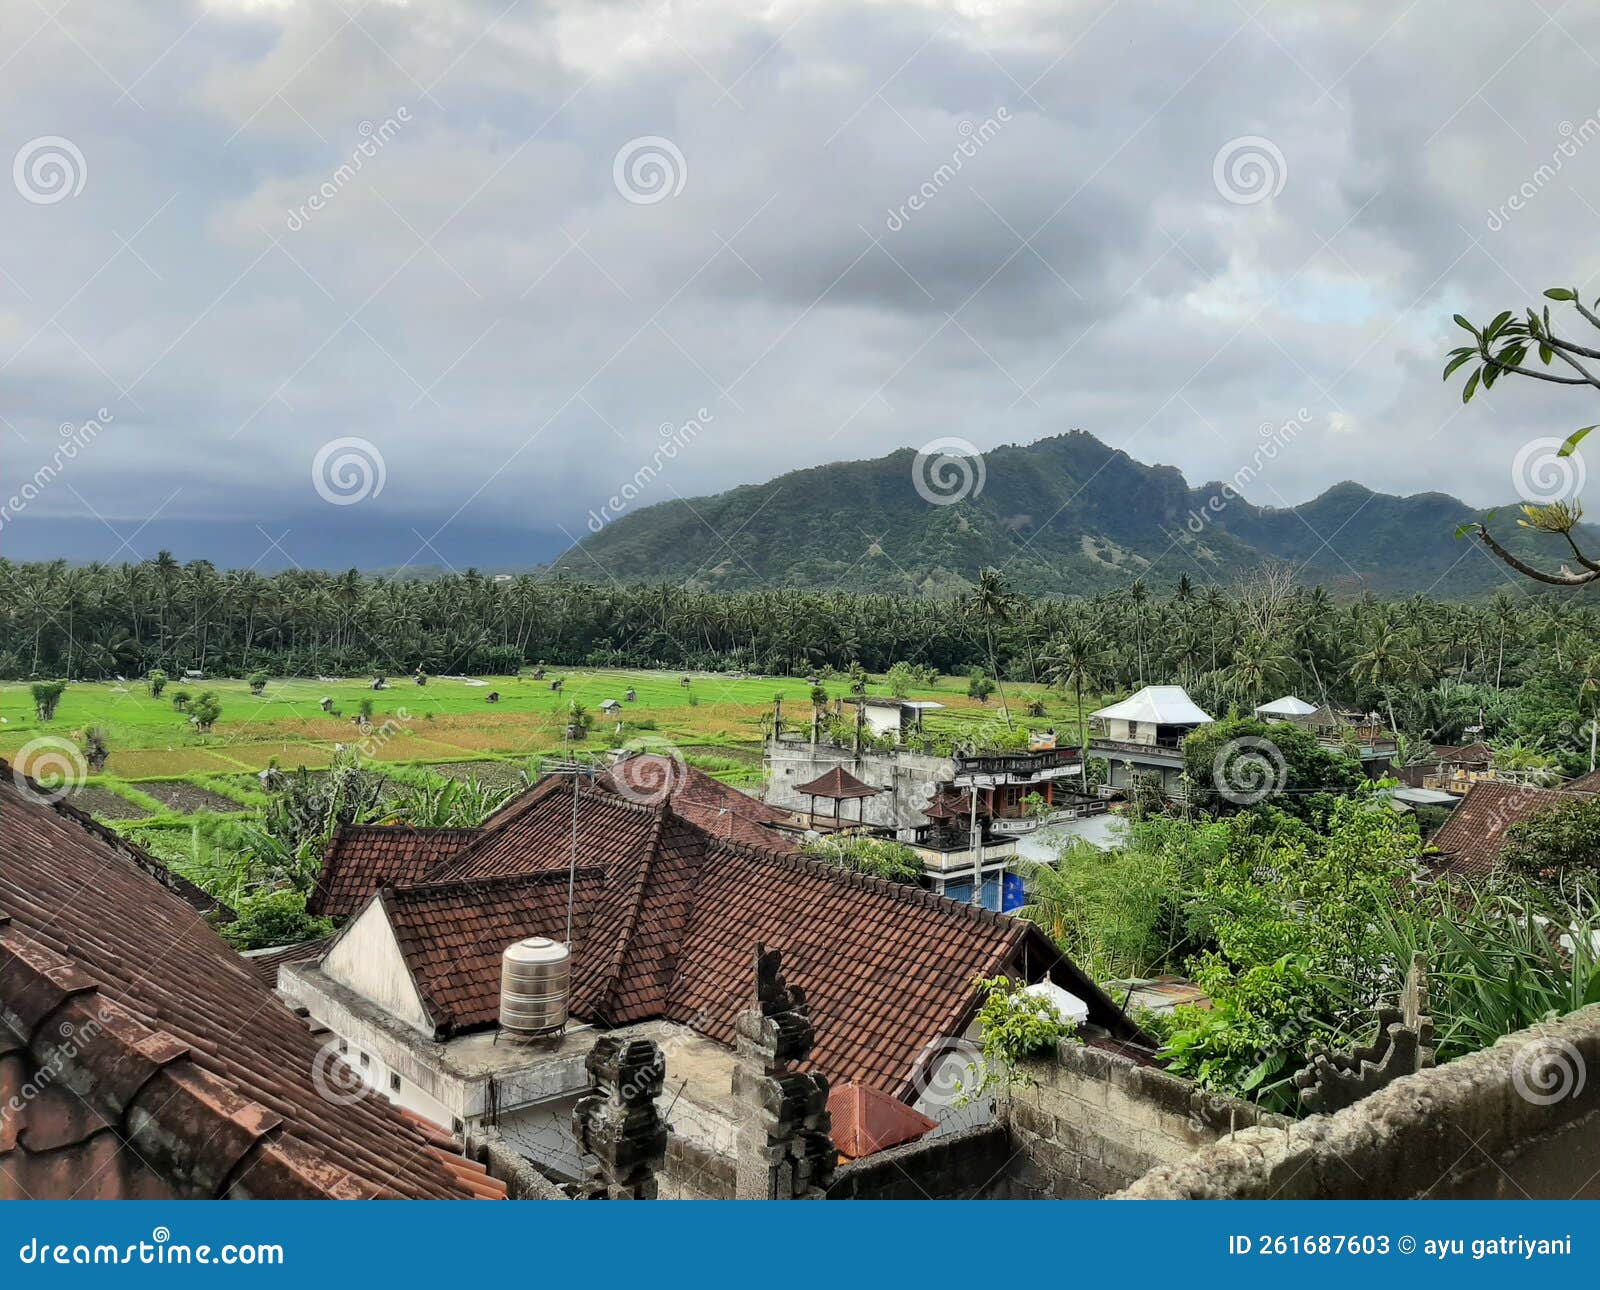 印尼巴厘岛绿色村庄度假村-商业建筑案例-筑龙建筑设计论坛